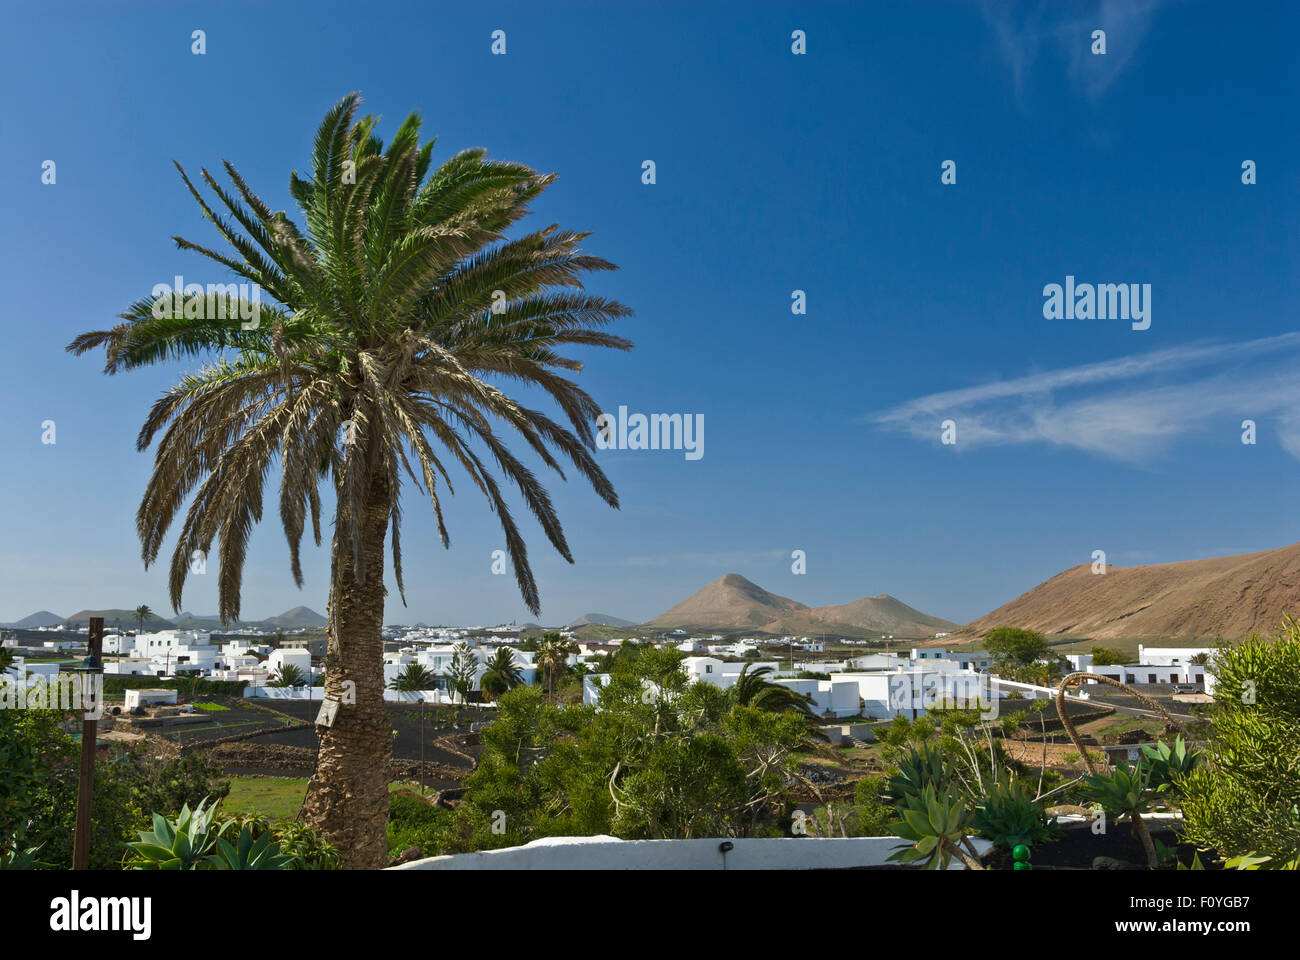 Ferme de Lanzarote Finca jardin avec palmier et typique village blanc et volcans de Lanzarote Îles Canaries derrière Banque D'Images